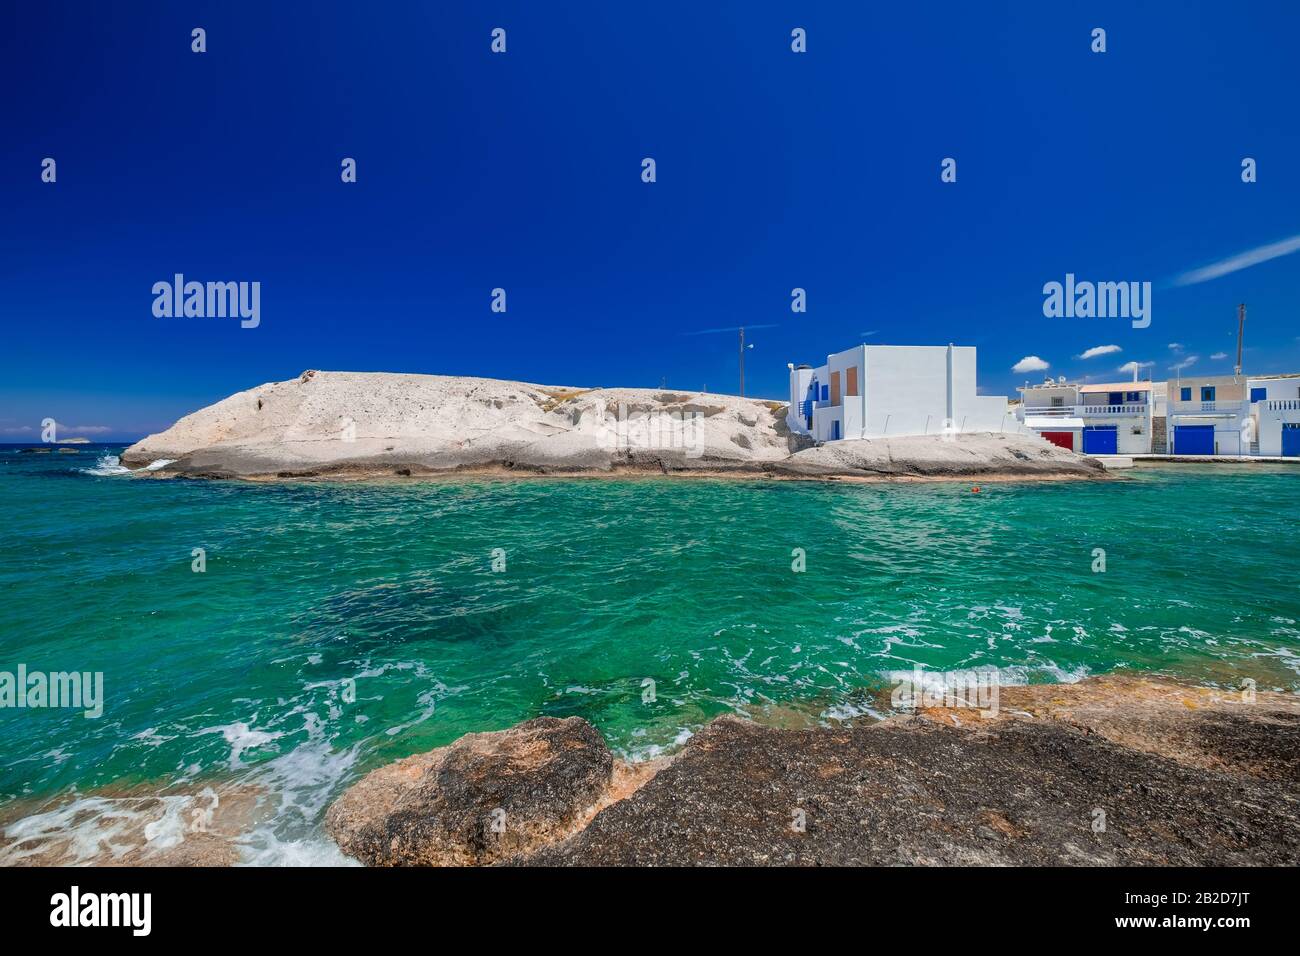 Vista sul tradizionale villaggio di pescatori con case bianche sulla costa. Acque turchesi dell'isola di Milos, Mar Egeo. Incredibile paesaggio mediterraneo. Greec Foto Stock